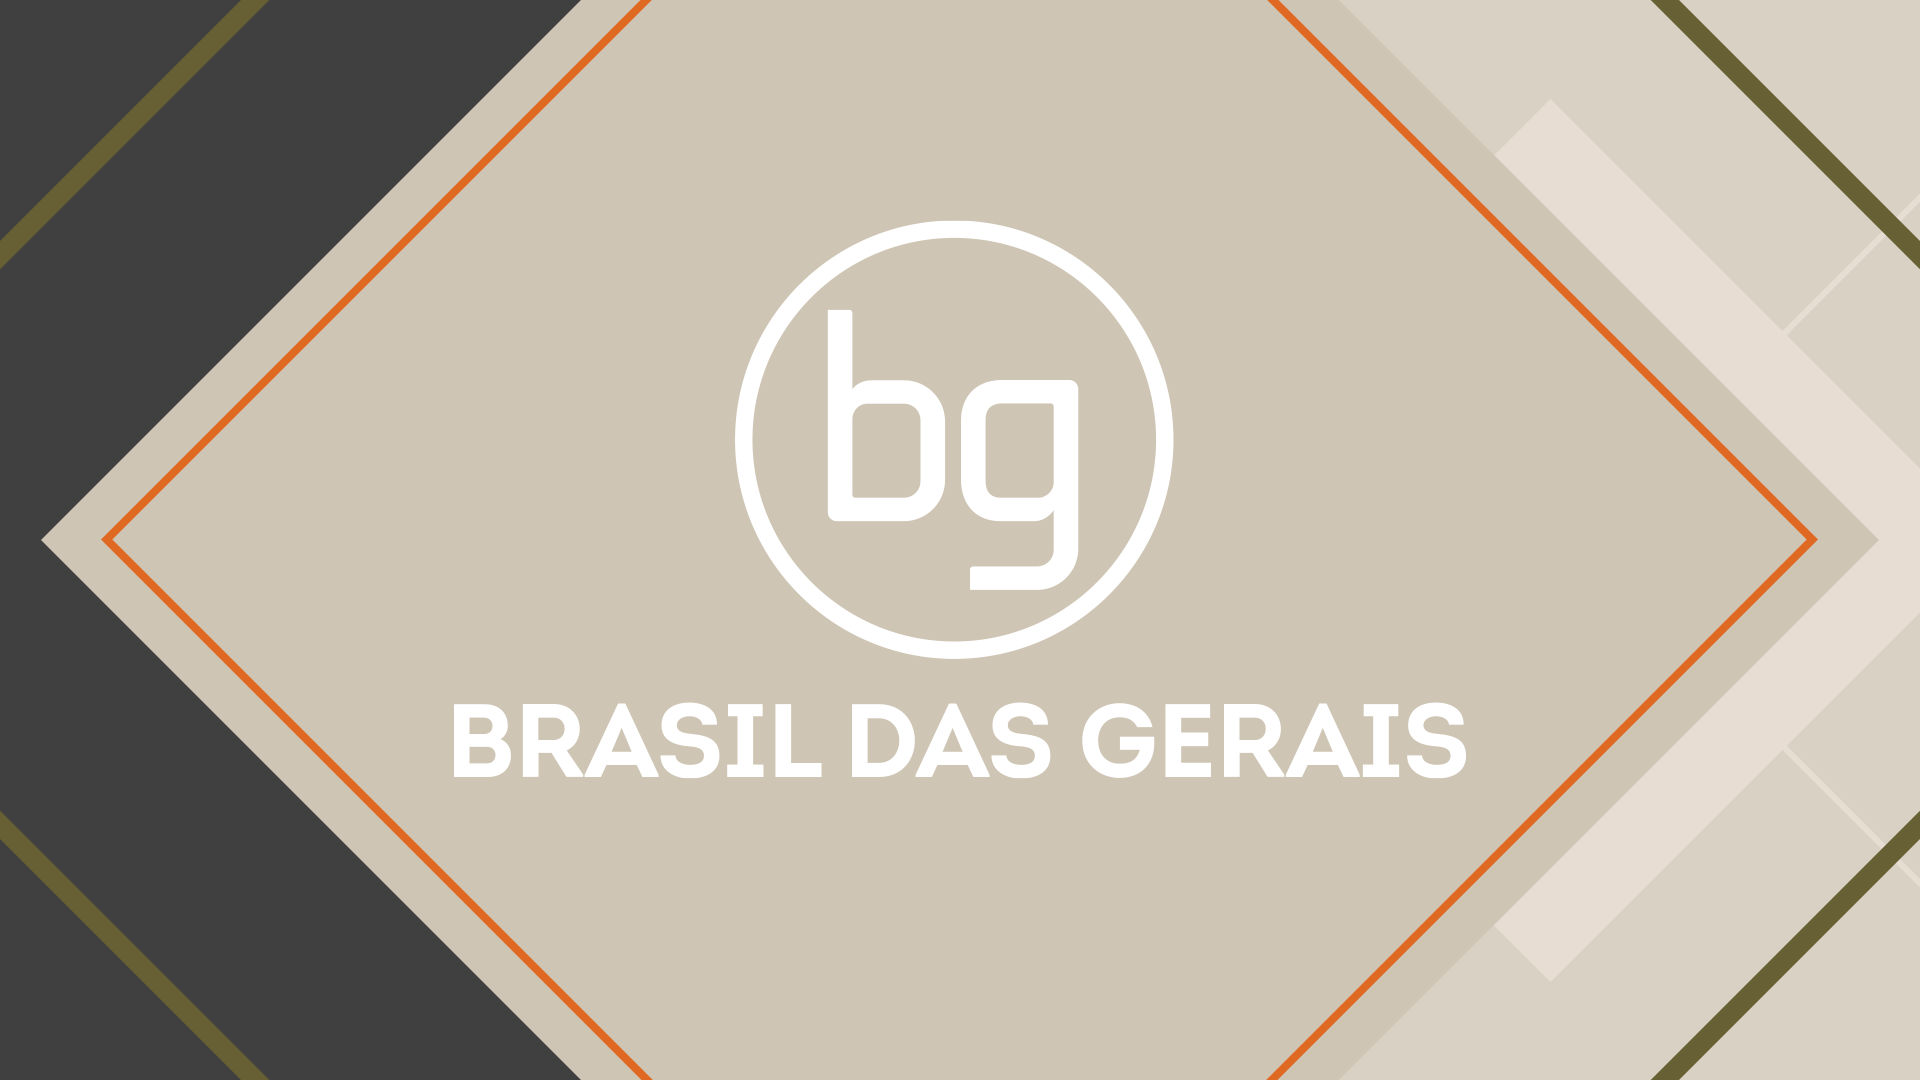 Aniversário de 85 anos da Rádio Inconfidência é tema do Brasil das Gerais